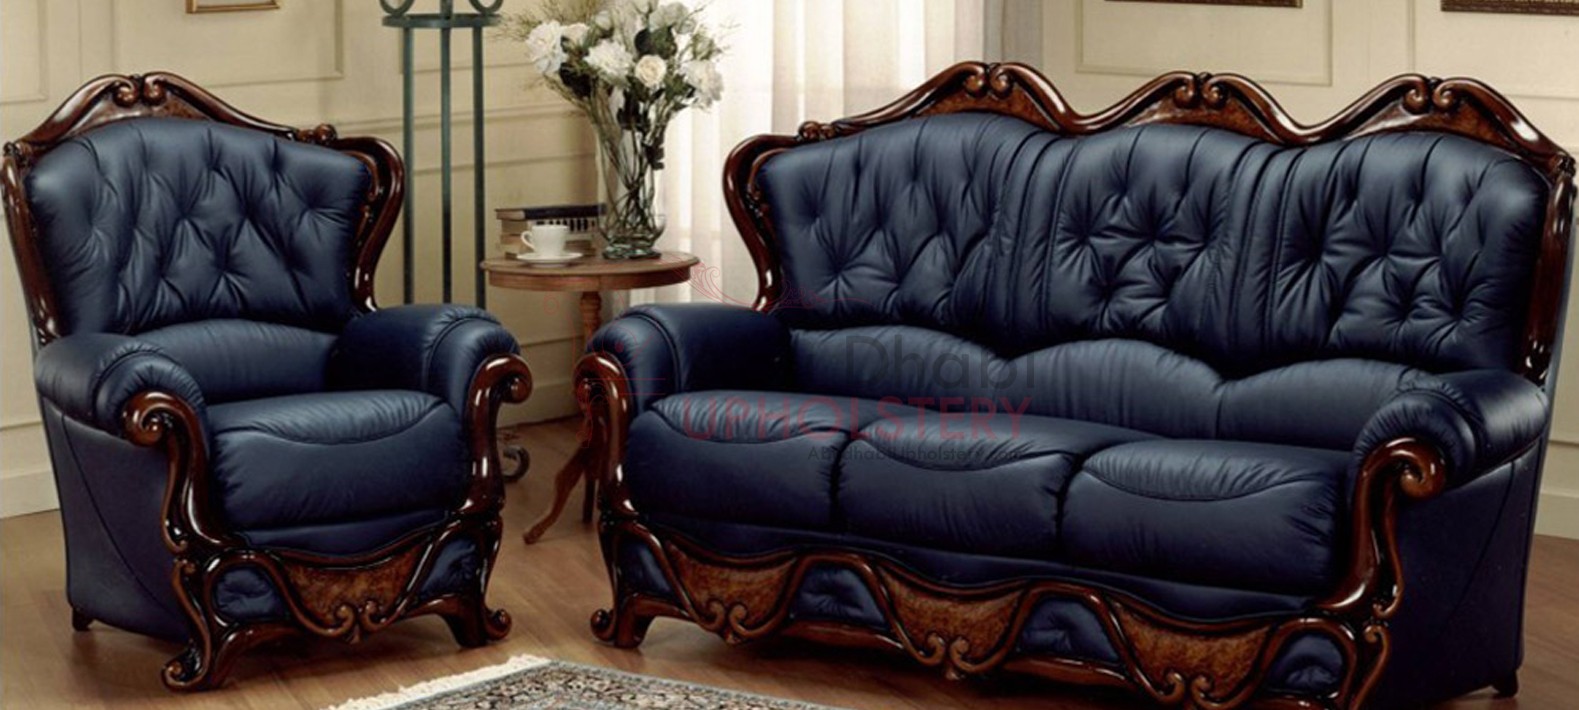 Leather Sofa Repair In UAE